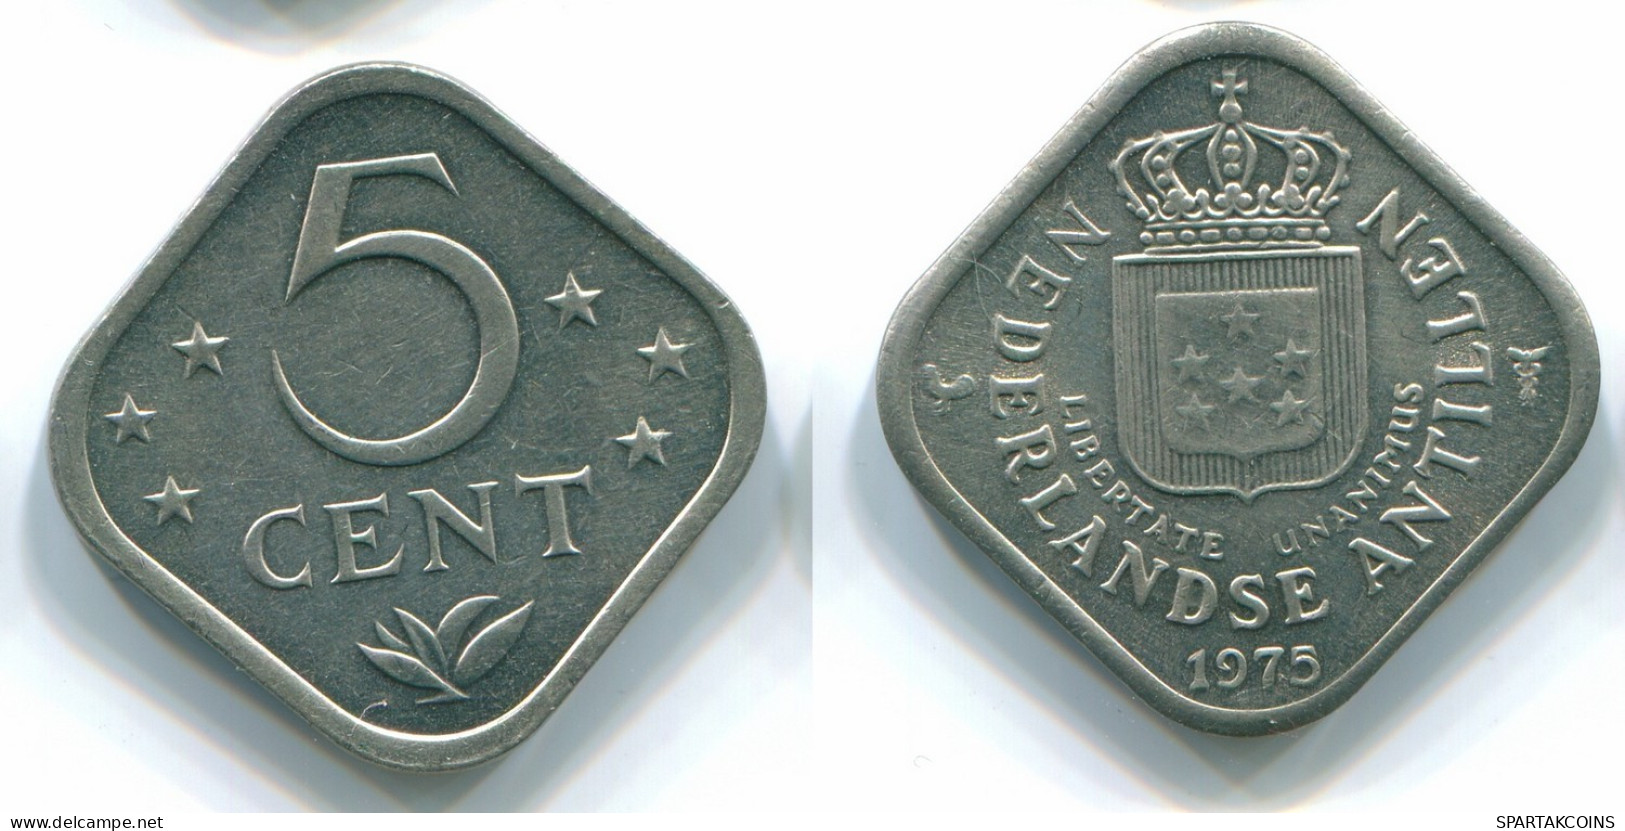 5 CENTS 1975 NIEDERLÄNDISCHE ANTILLEN Nickel Koloniale Münze #S12232.D.A - Niederländische Antillen